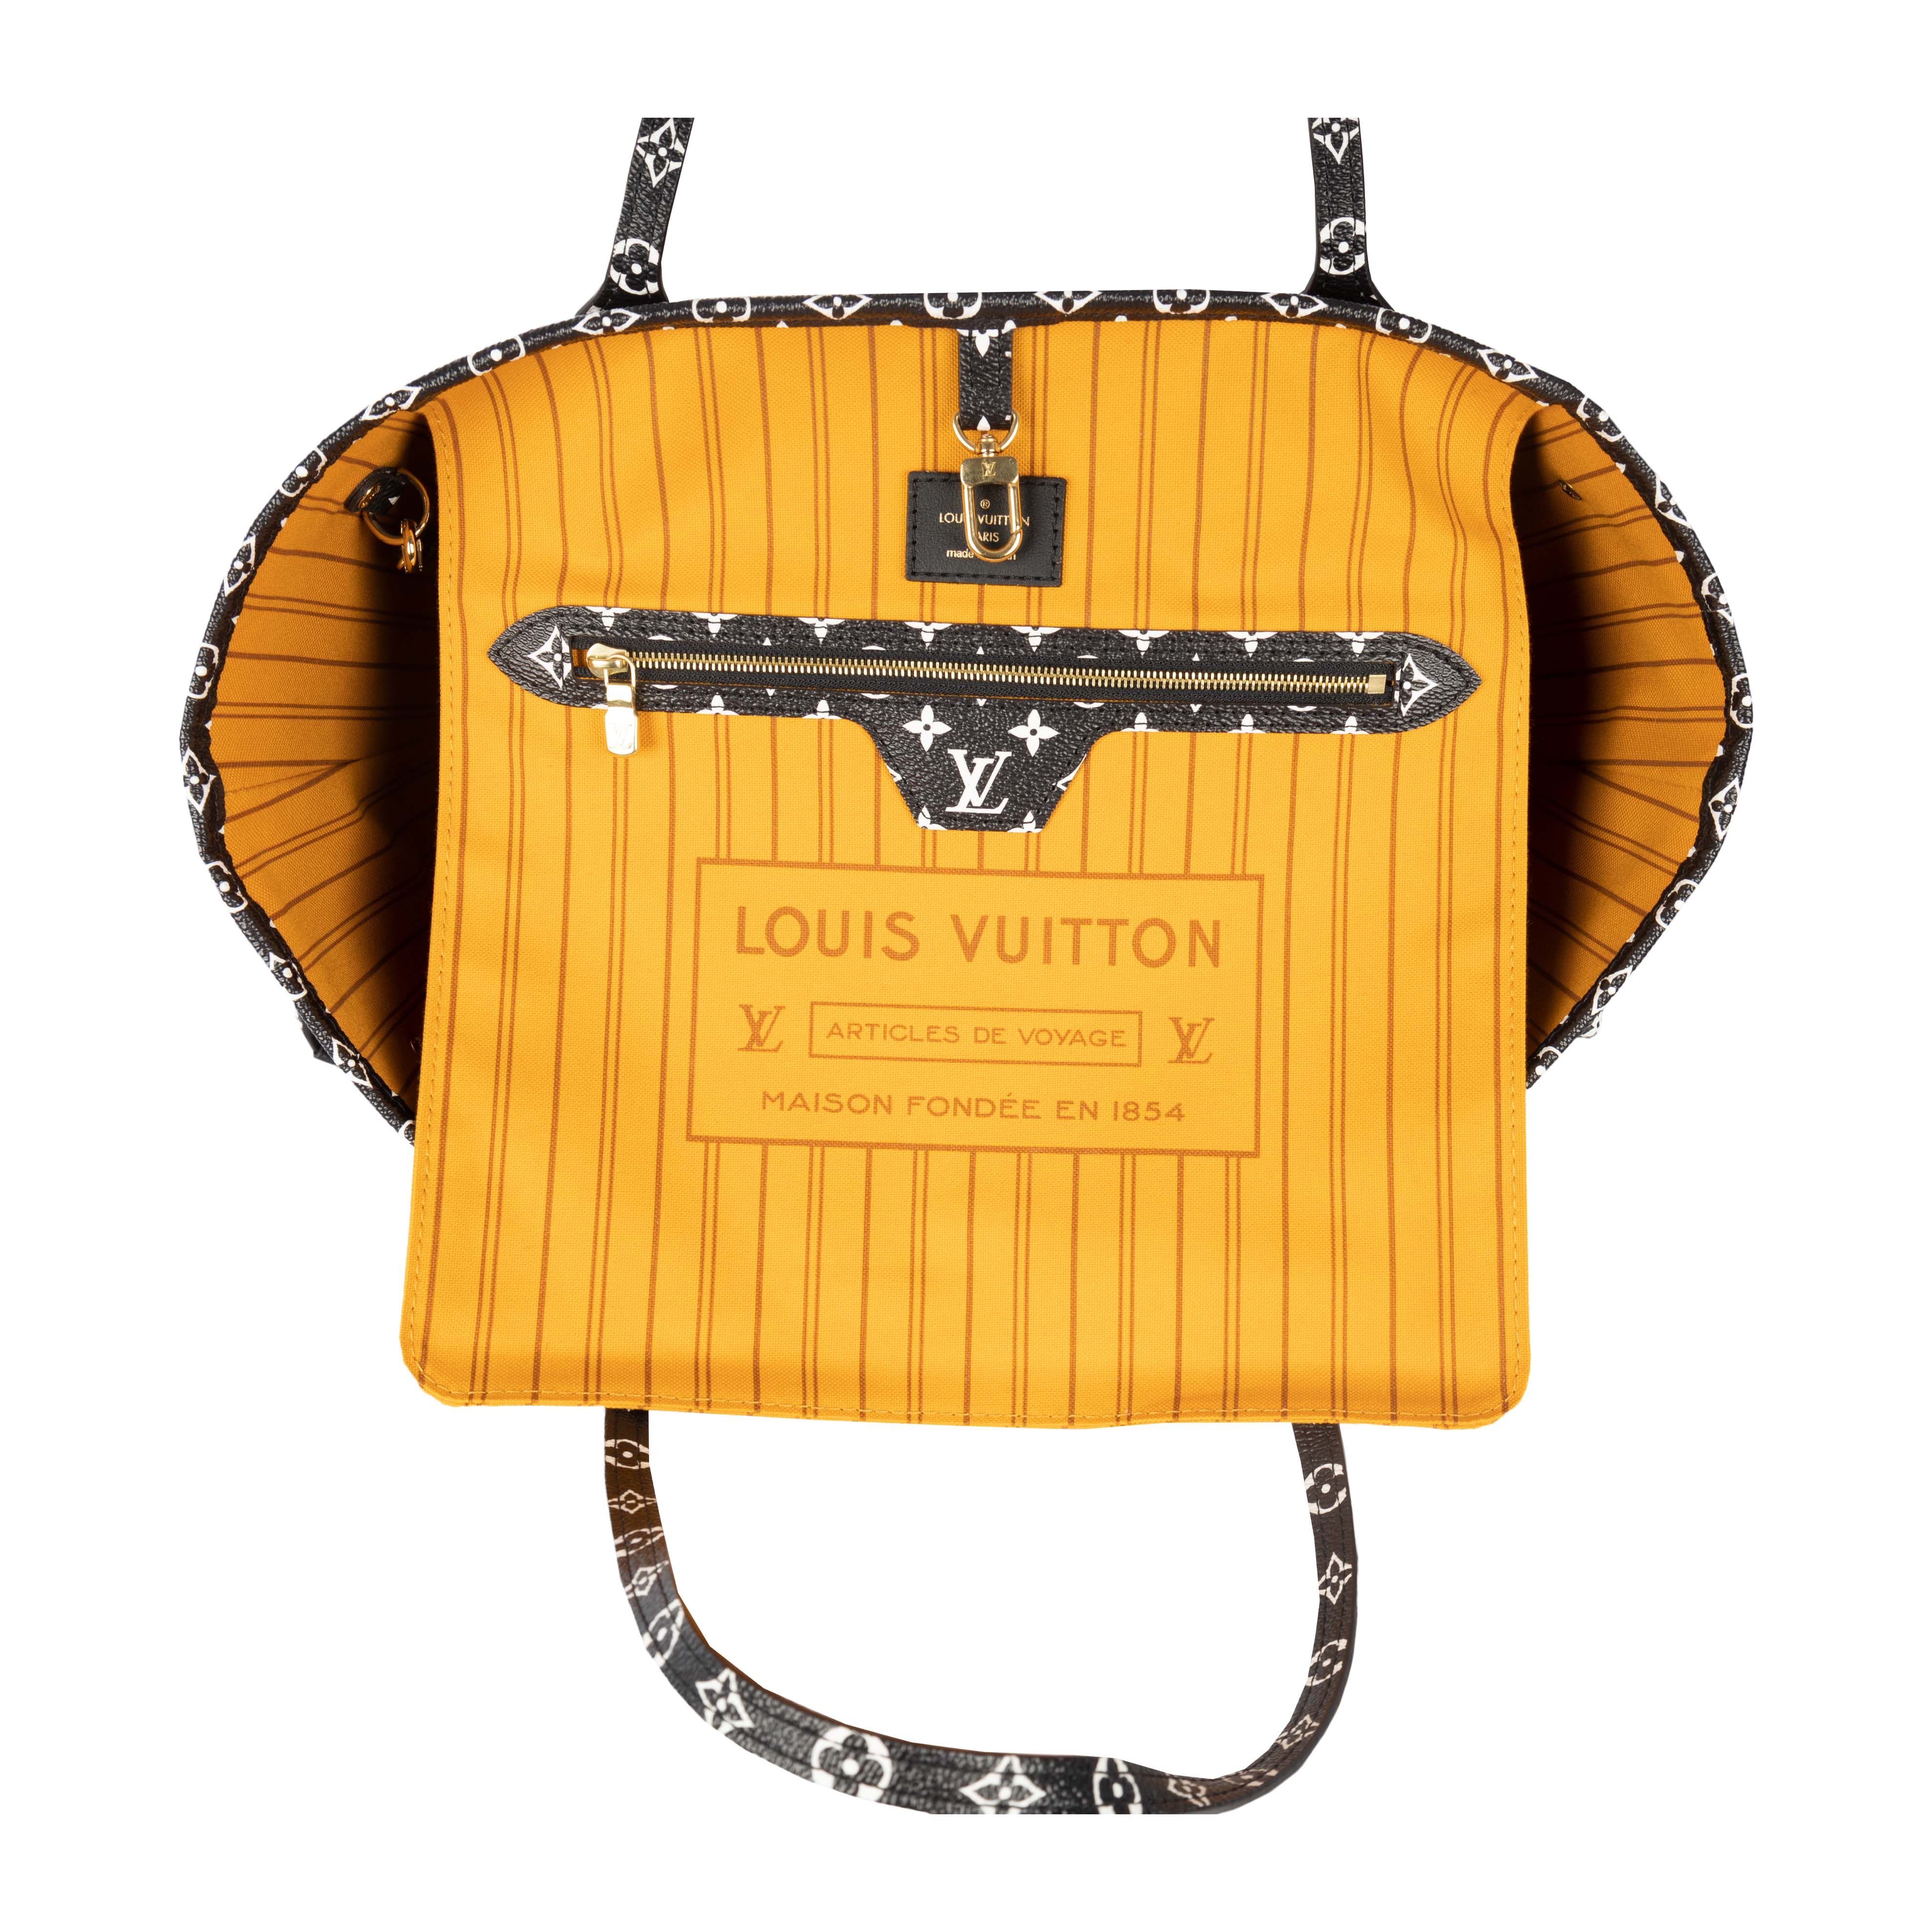 Louis Vuitton Articles De Voyage Monogram Neverfull Tote Bag #131156